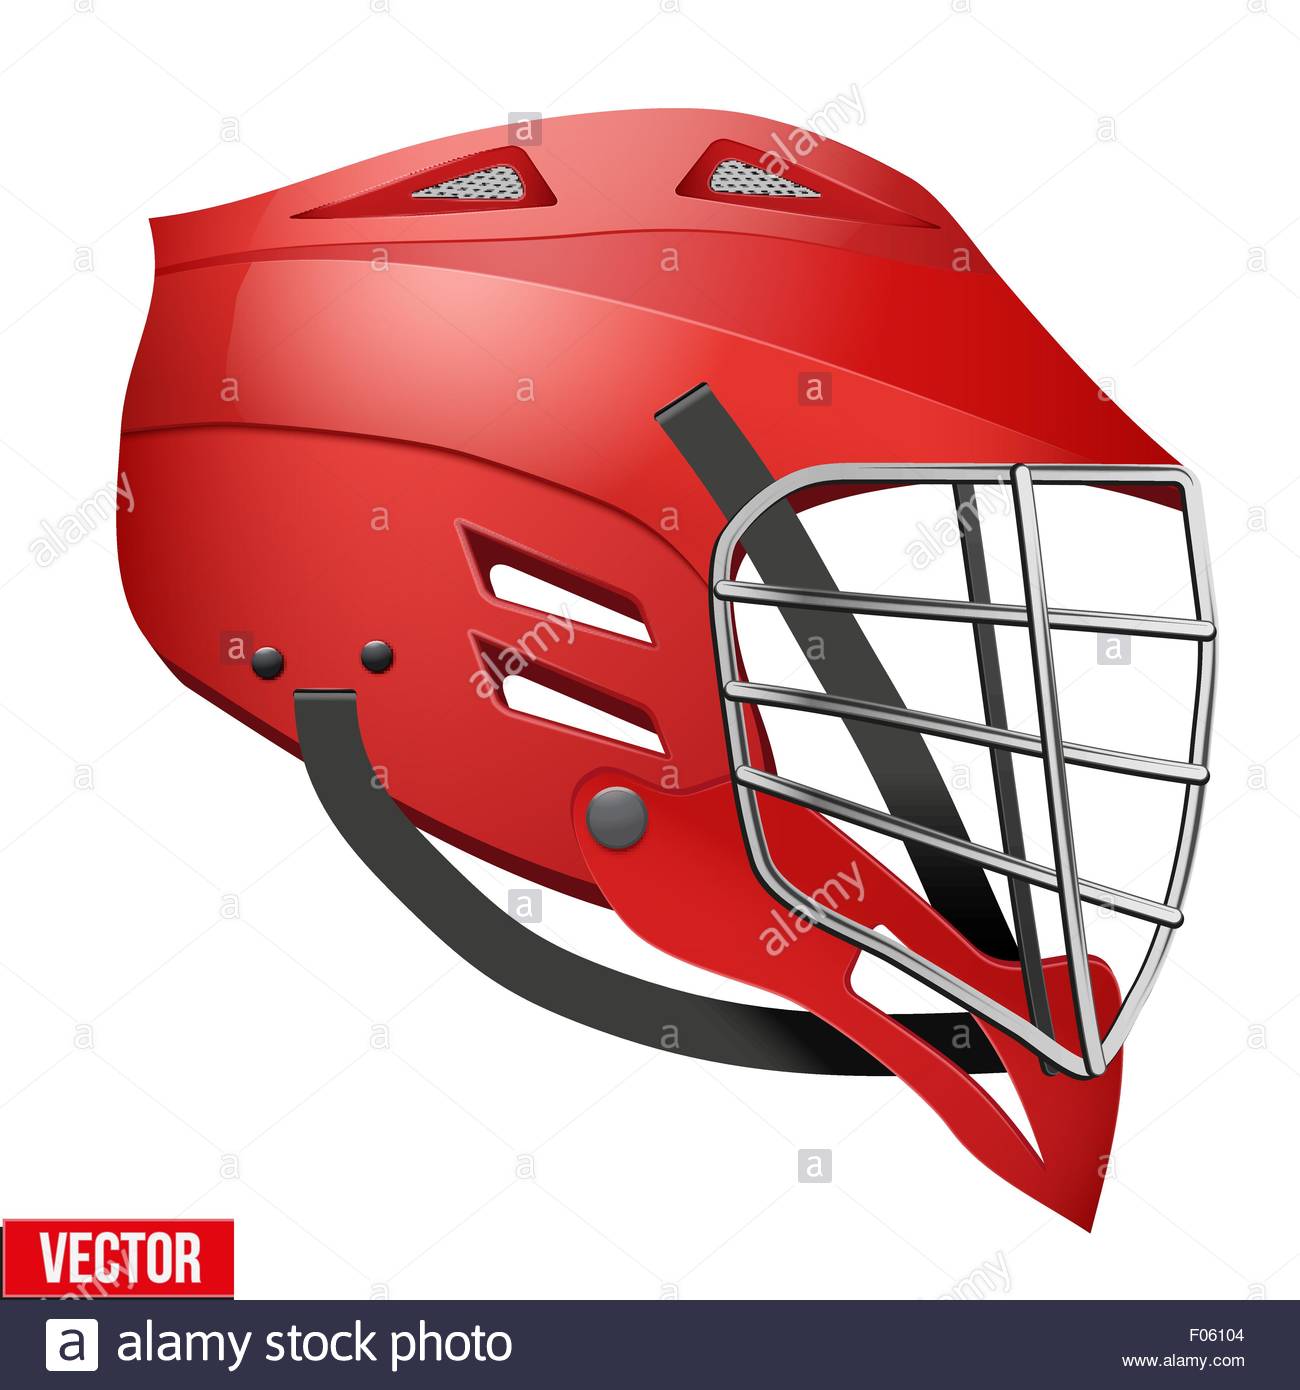 Lacrosse Helmet Drawing at GetDrawings | Free download